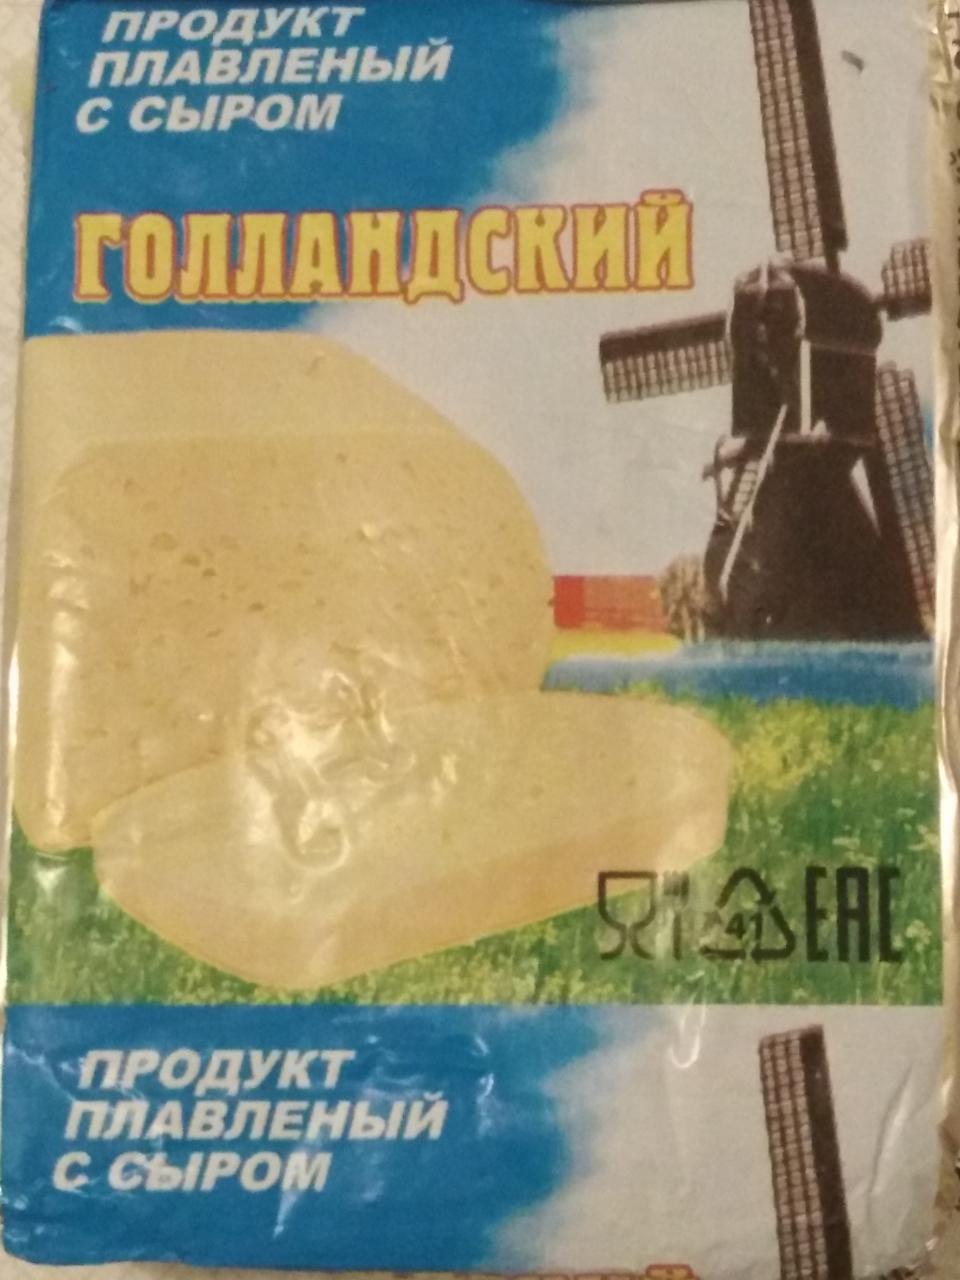 Фото - продукт плавленый с сыром голландский ломтевой Омский завод плавленых сыров